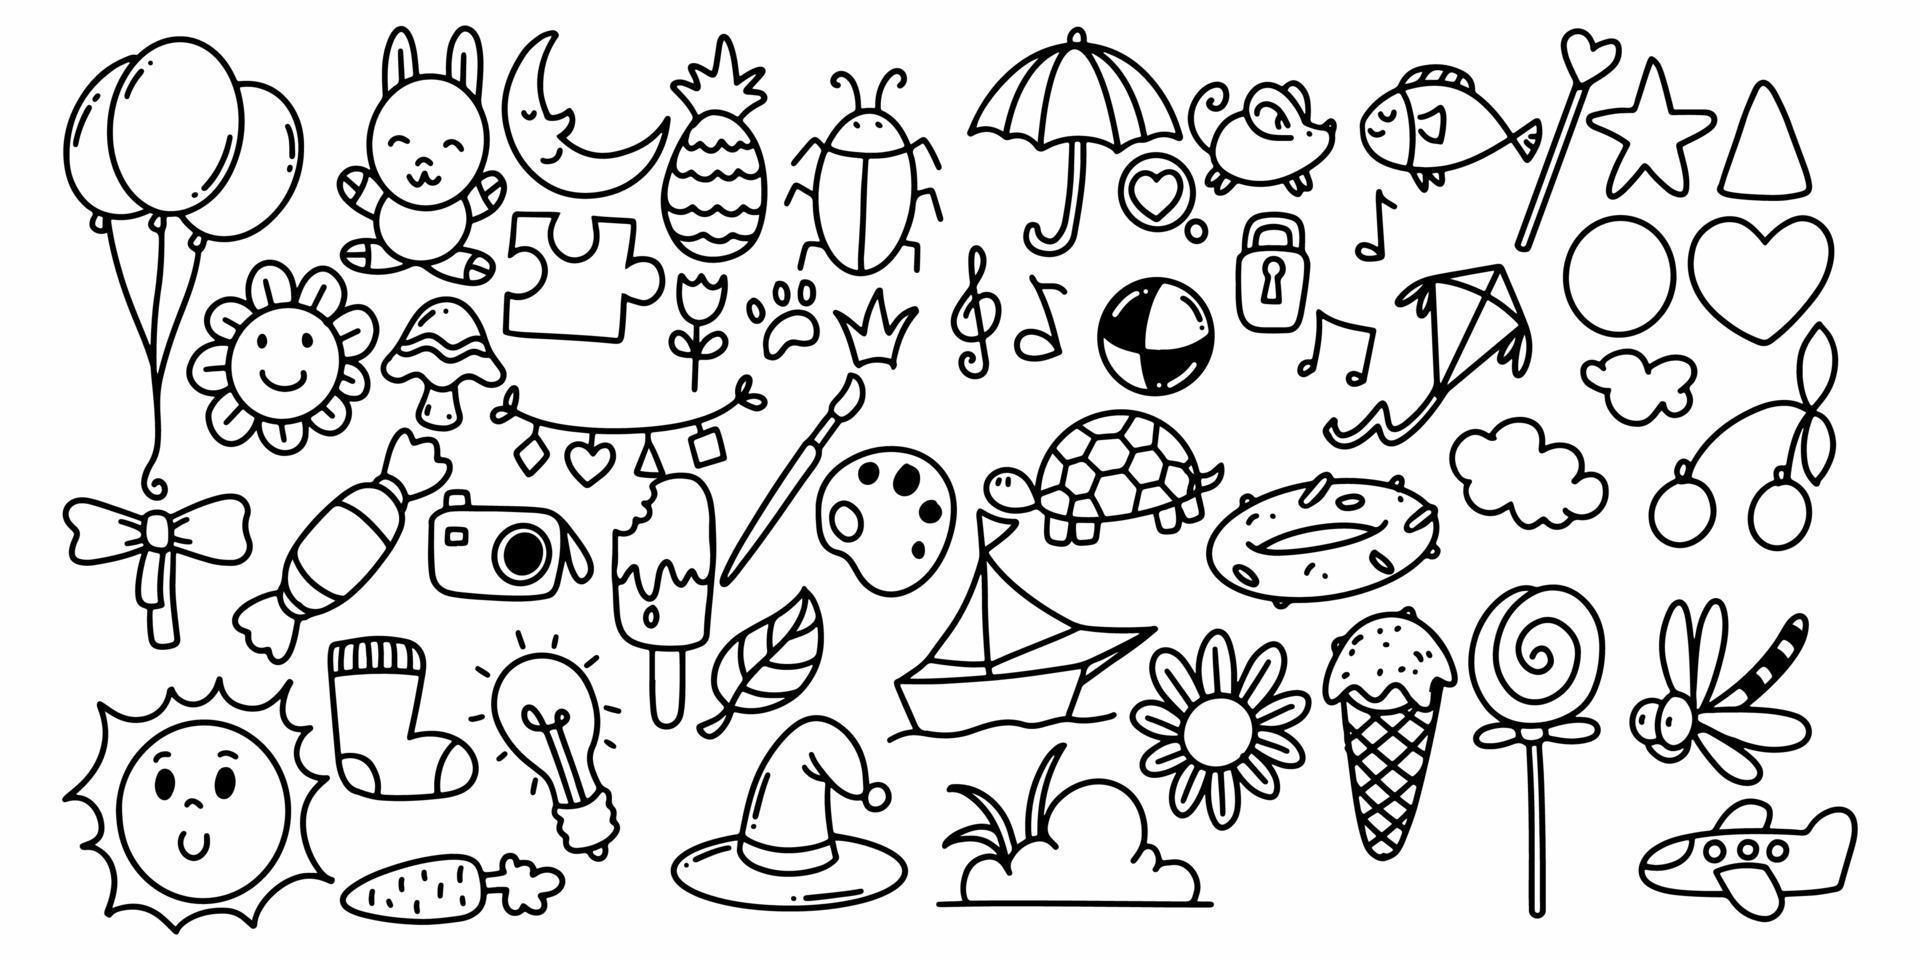 conjunto de elementos en estilo infantil doodle dibujado a mano vector